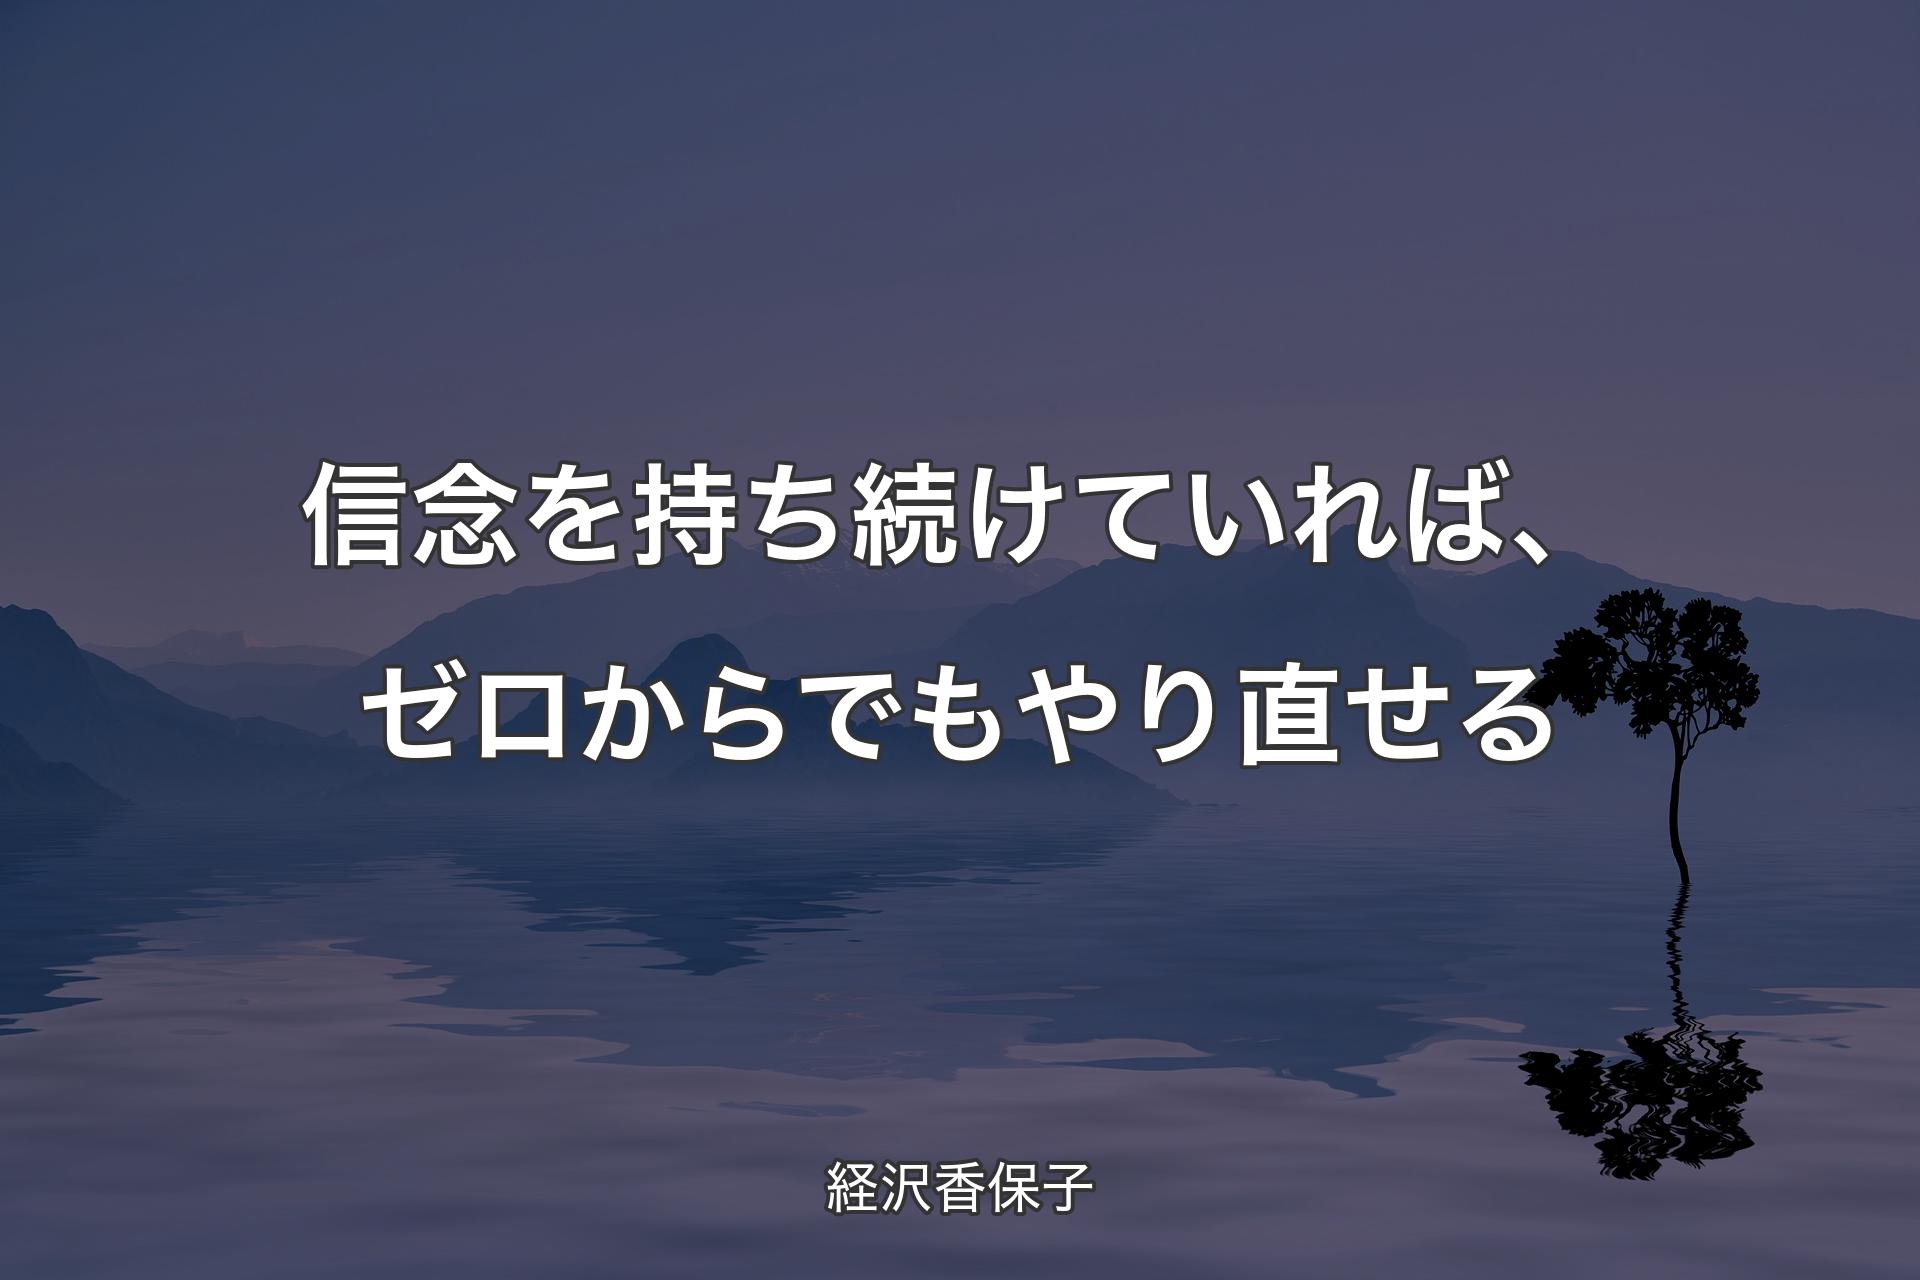 【背景4】信念を持ち続けていれば、ゼロからでもやり直せる - 経沢香保子